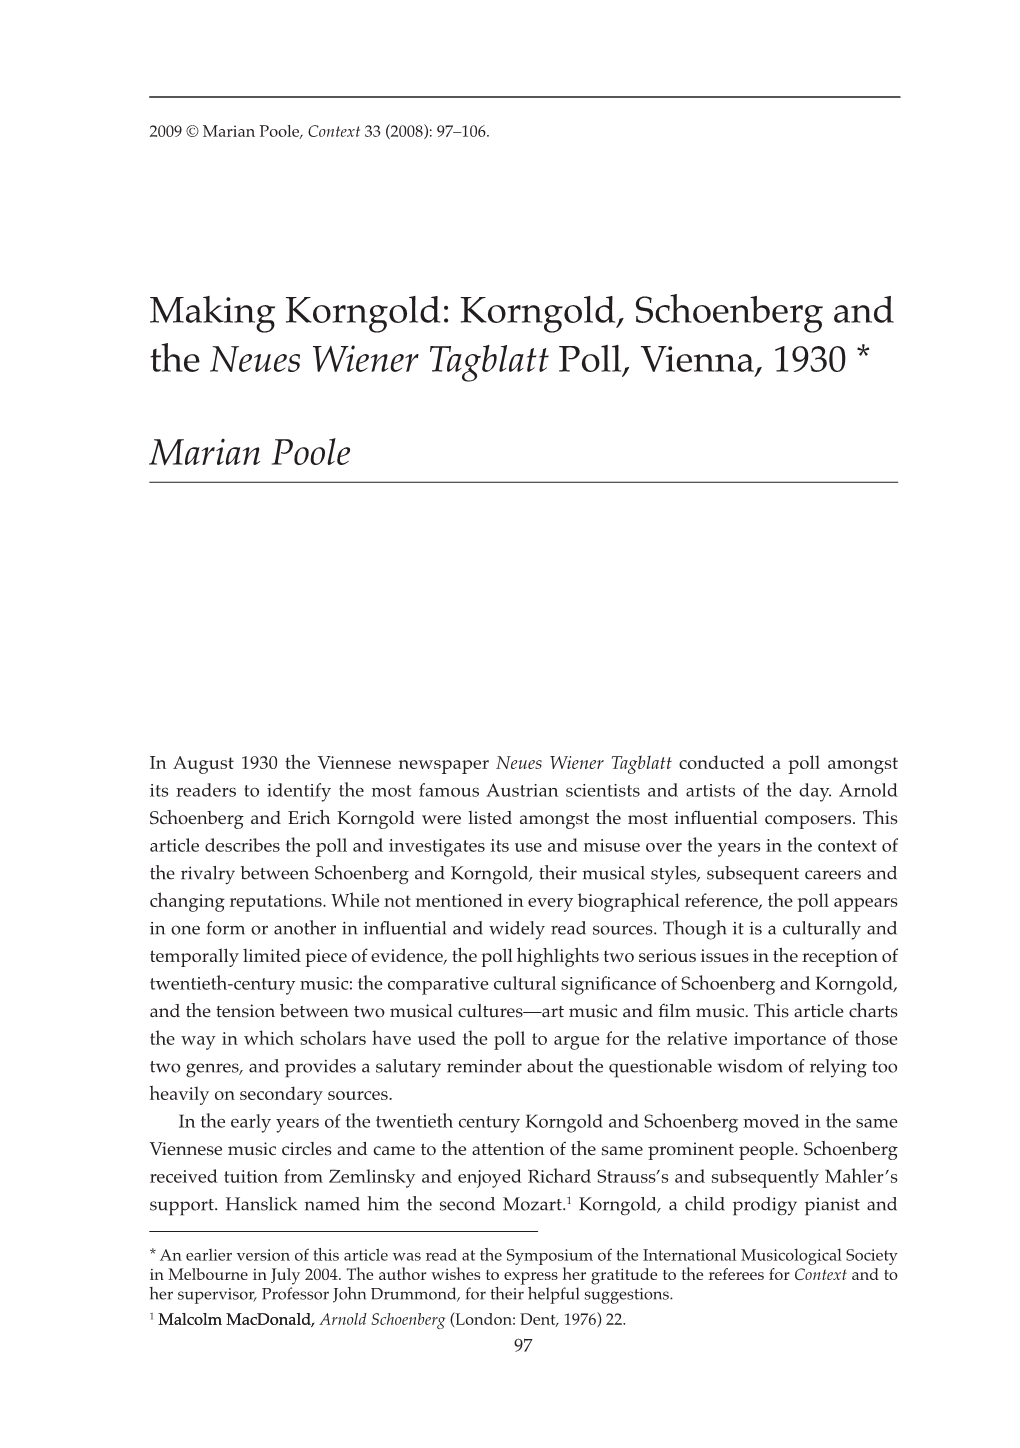 Making Korngold: Korngold, Schoenberg and the Neues Wiener Tagblatt Poll, Vienna, 1930 *